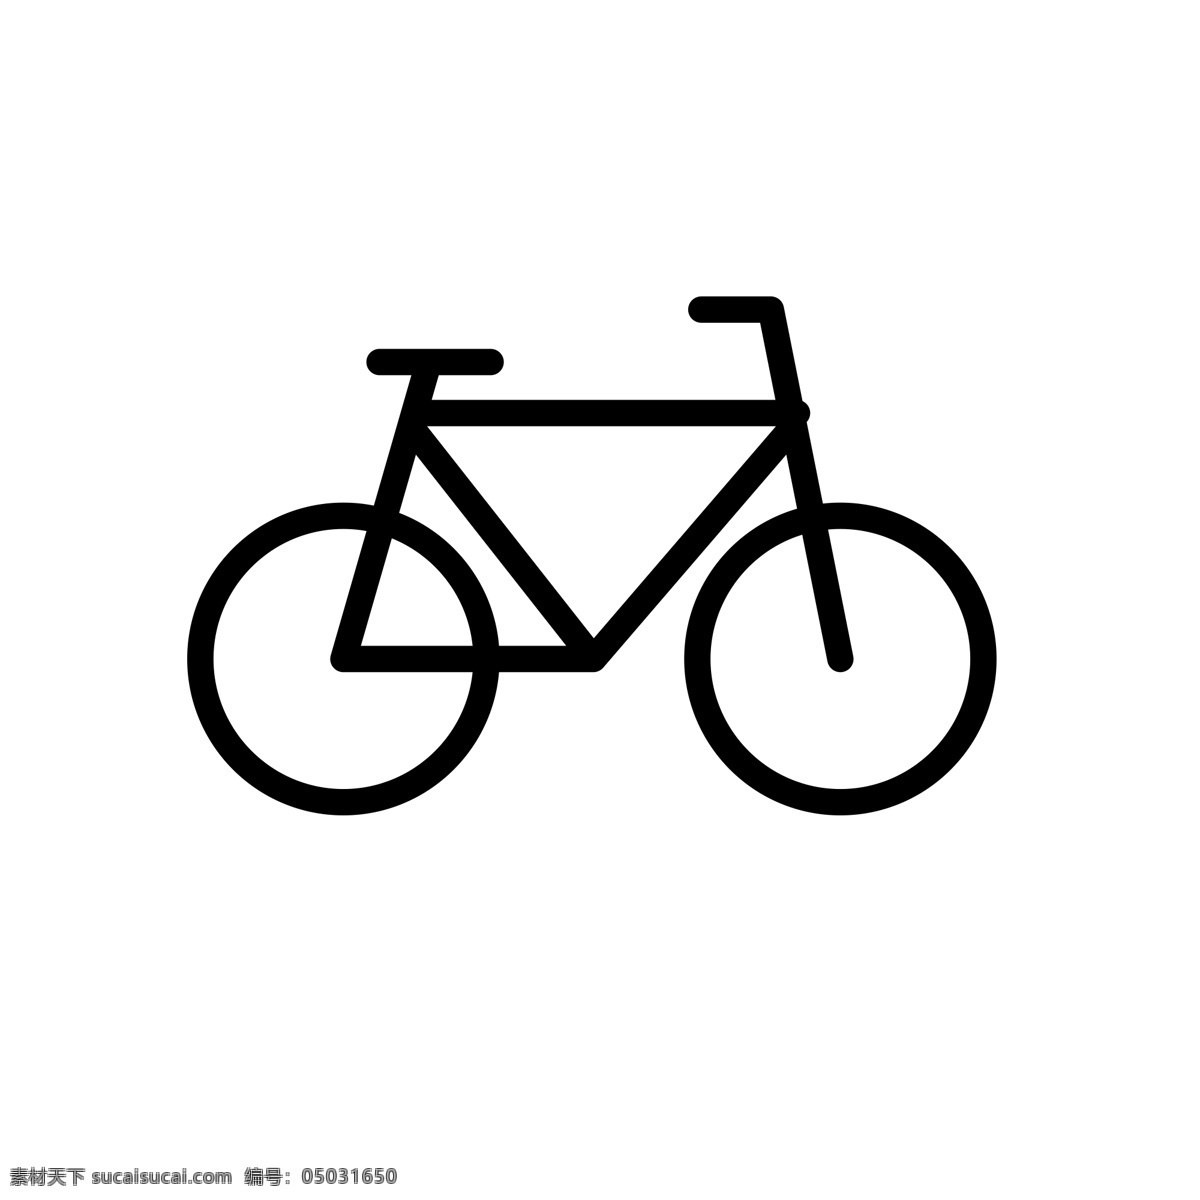 扁平化自行车 单车 自行车 扁平化ui ui图标 手机图标 界面ui 网页ui h5图标